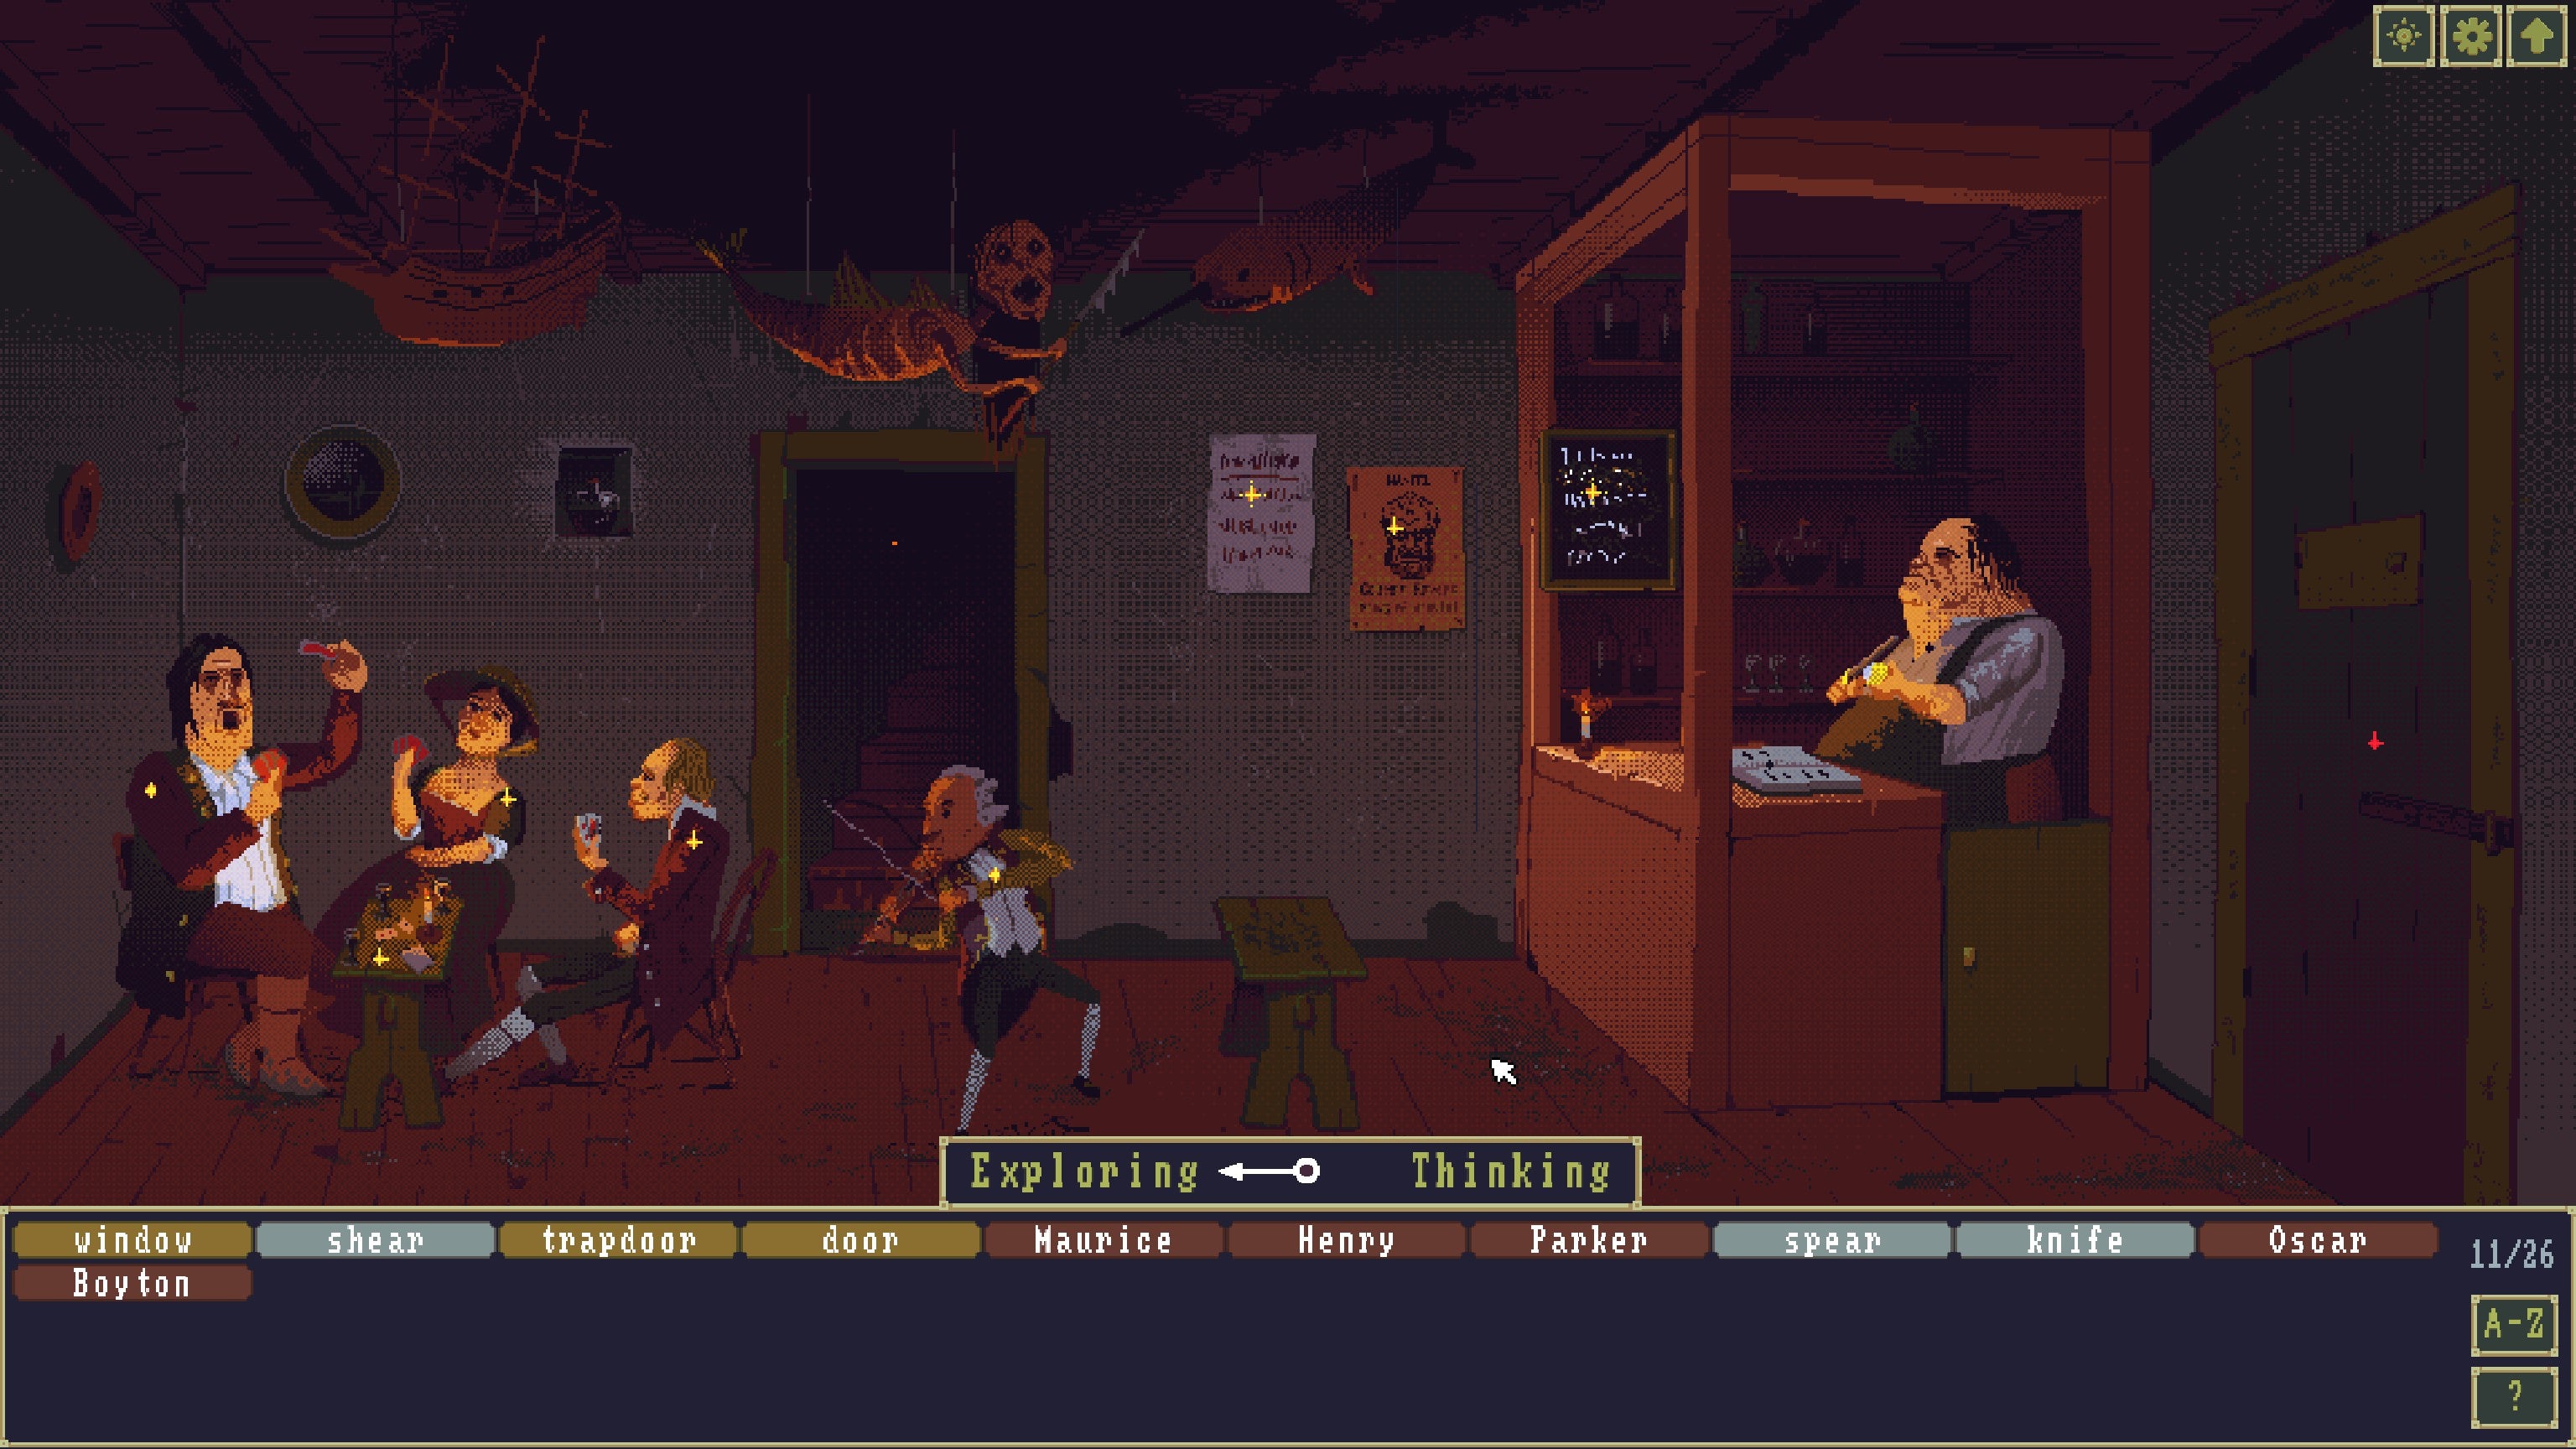 Una escena de bar donde tres campesinos juegan a las cartas mientras escuchan a un hombre tocar un violín en El caso del ídolo dorado.